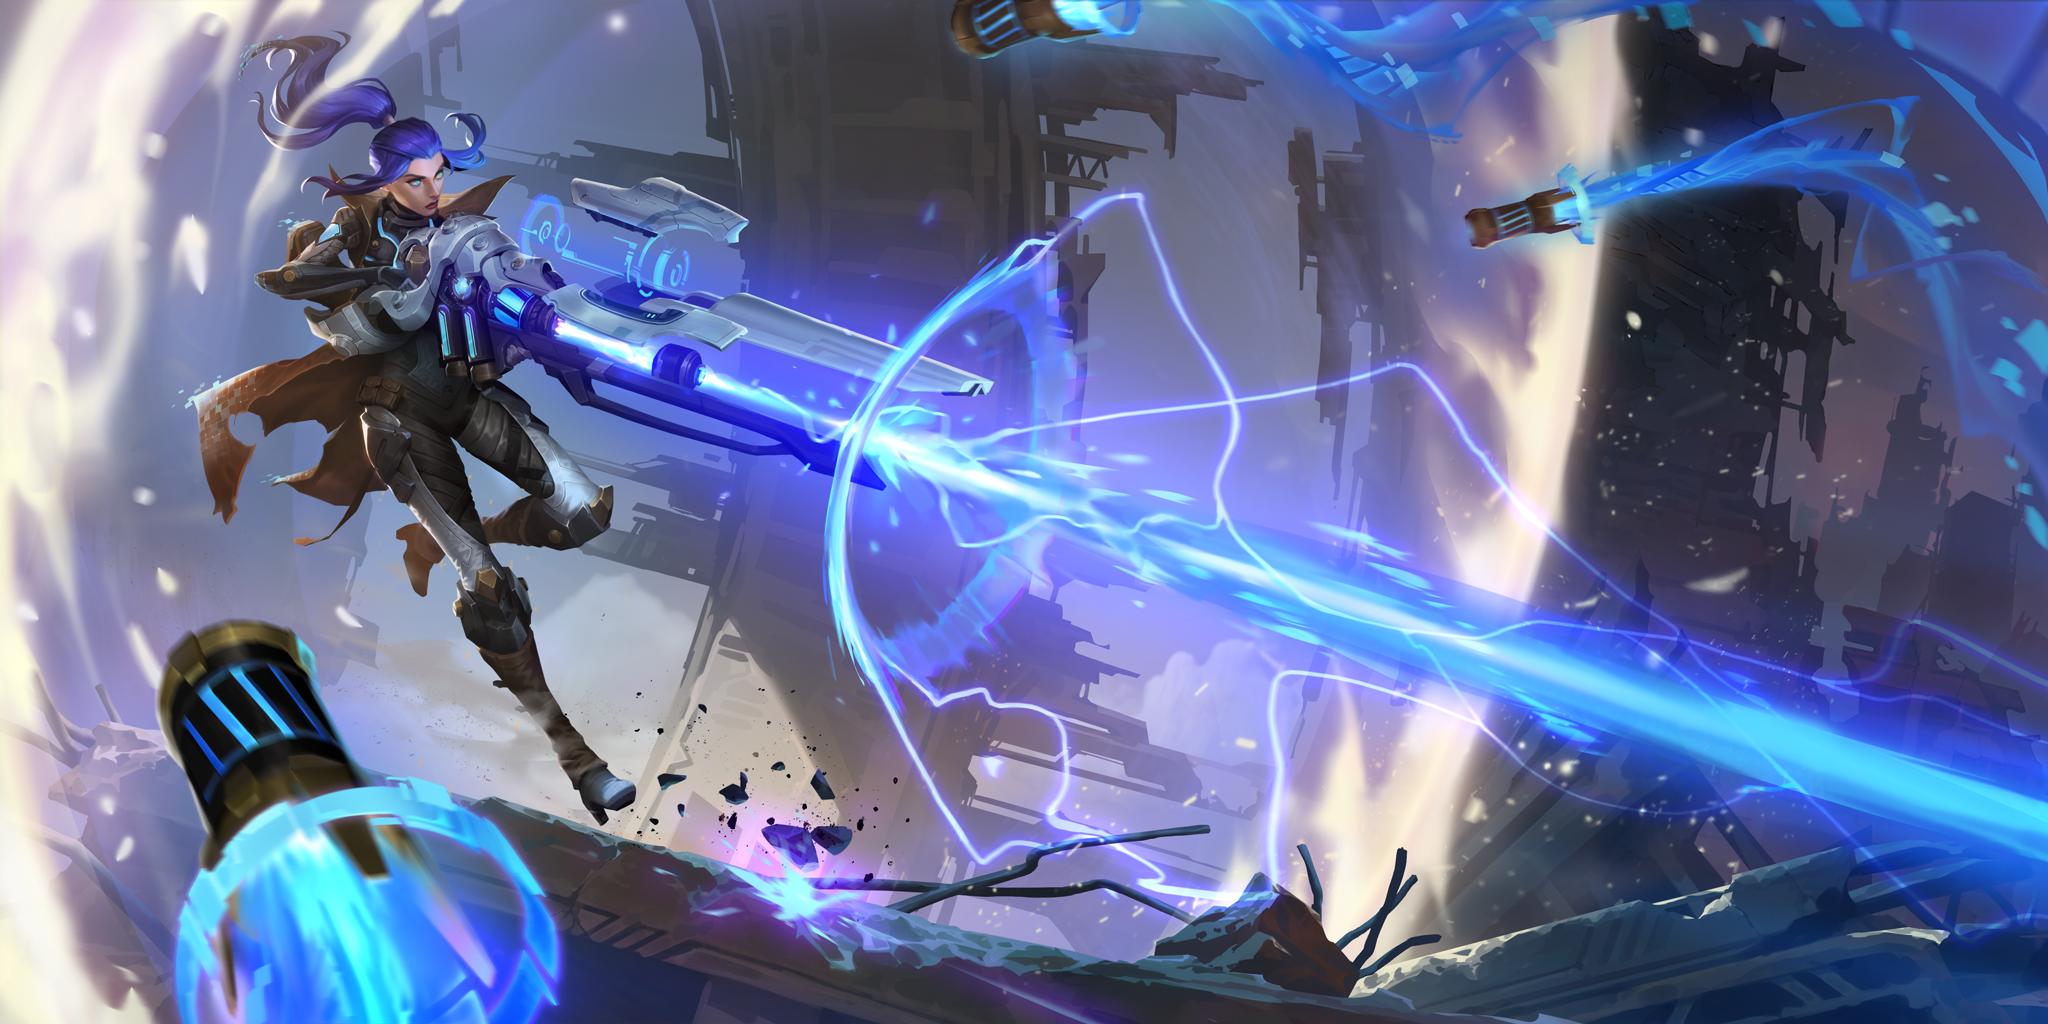 Serviciul de asistență pentru jucători Legends of Runeterra – Pulsefire Caitlyn trăgând cu o rază de energie dintr-o pușcă uriașă, în timp ce niște proiectile se îndreaptă spre ea.